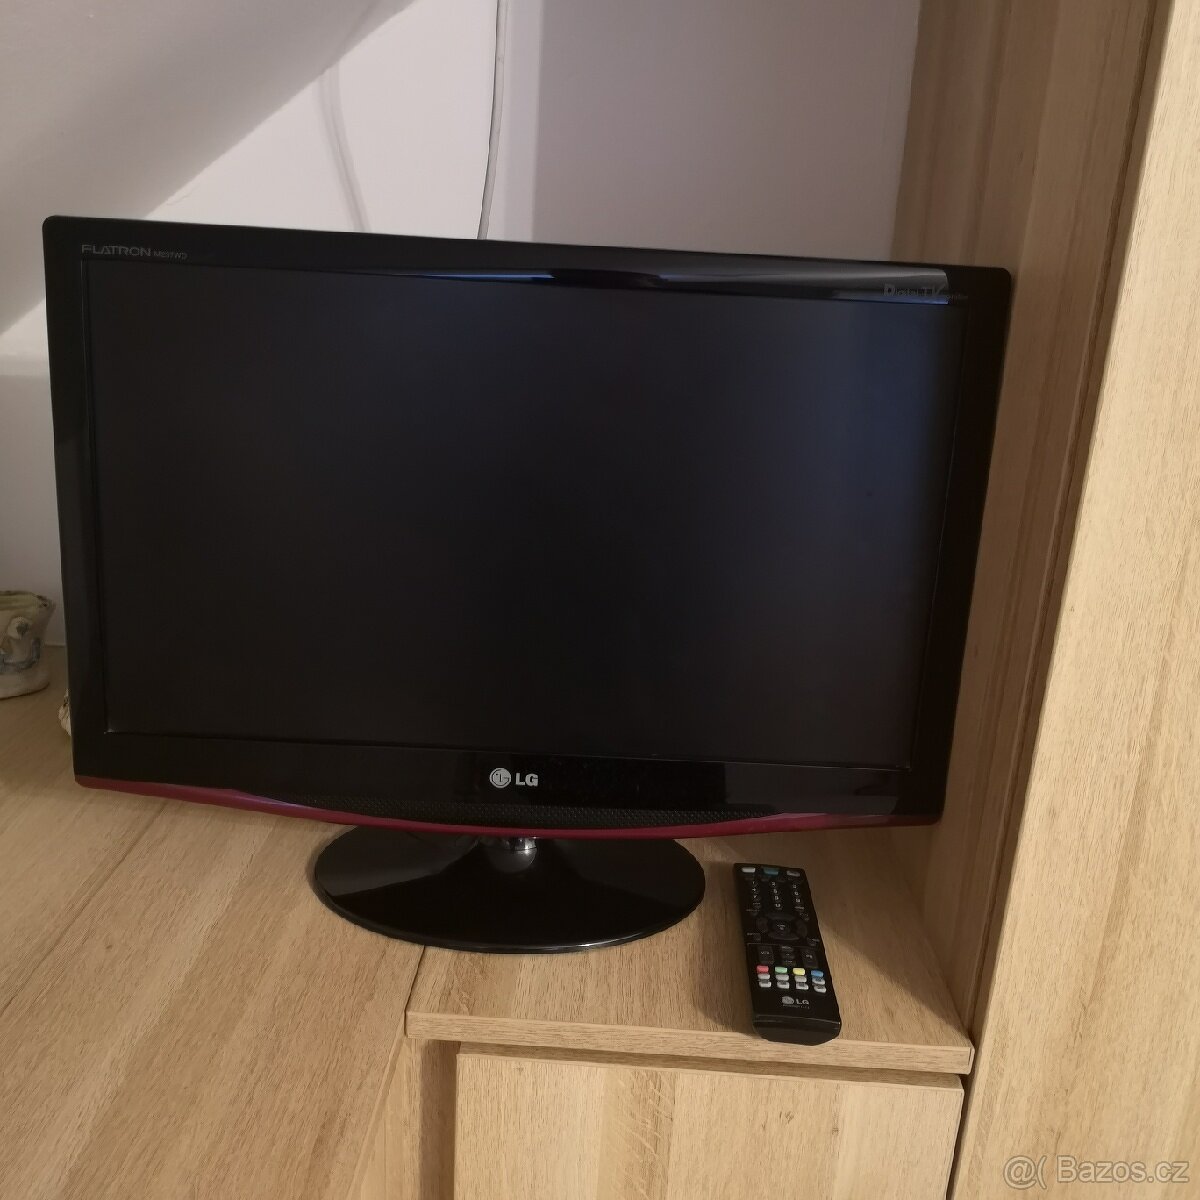 LG LCD Tv,monitor